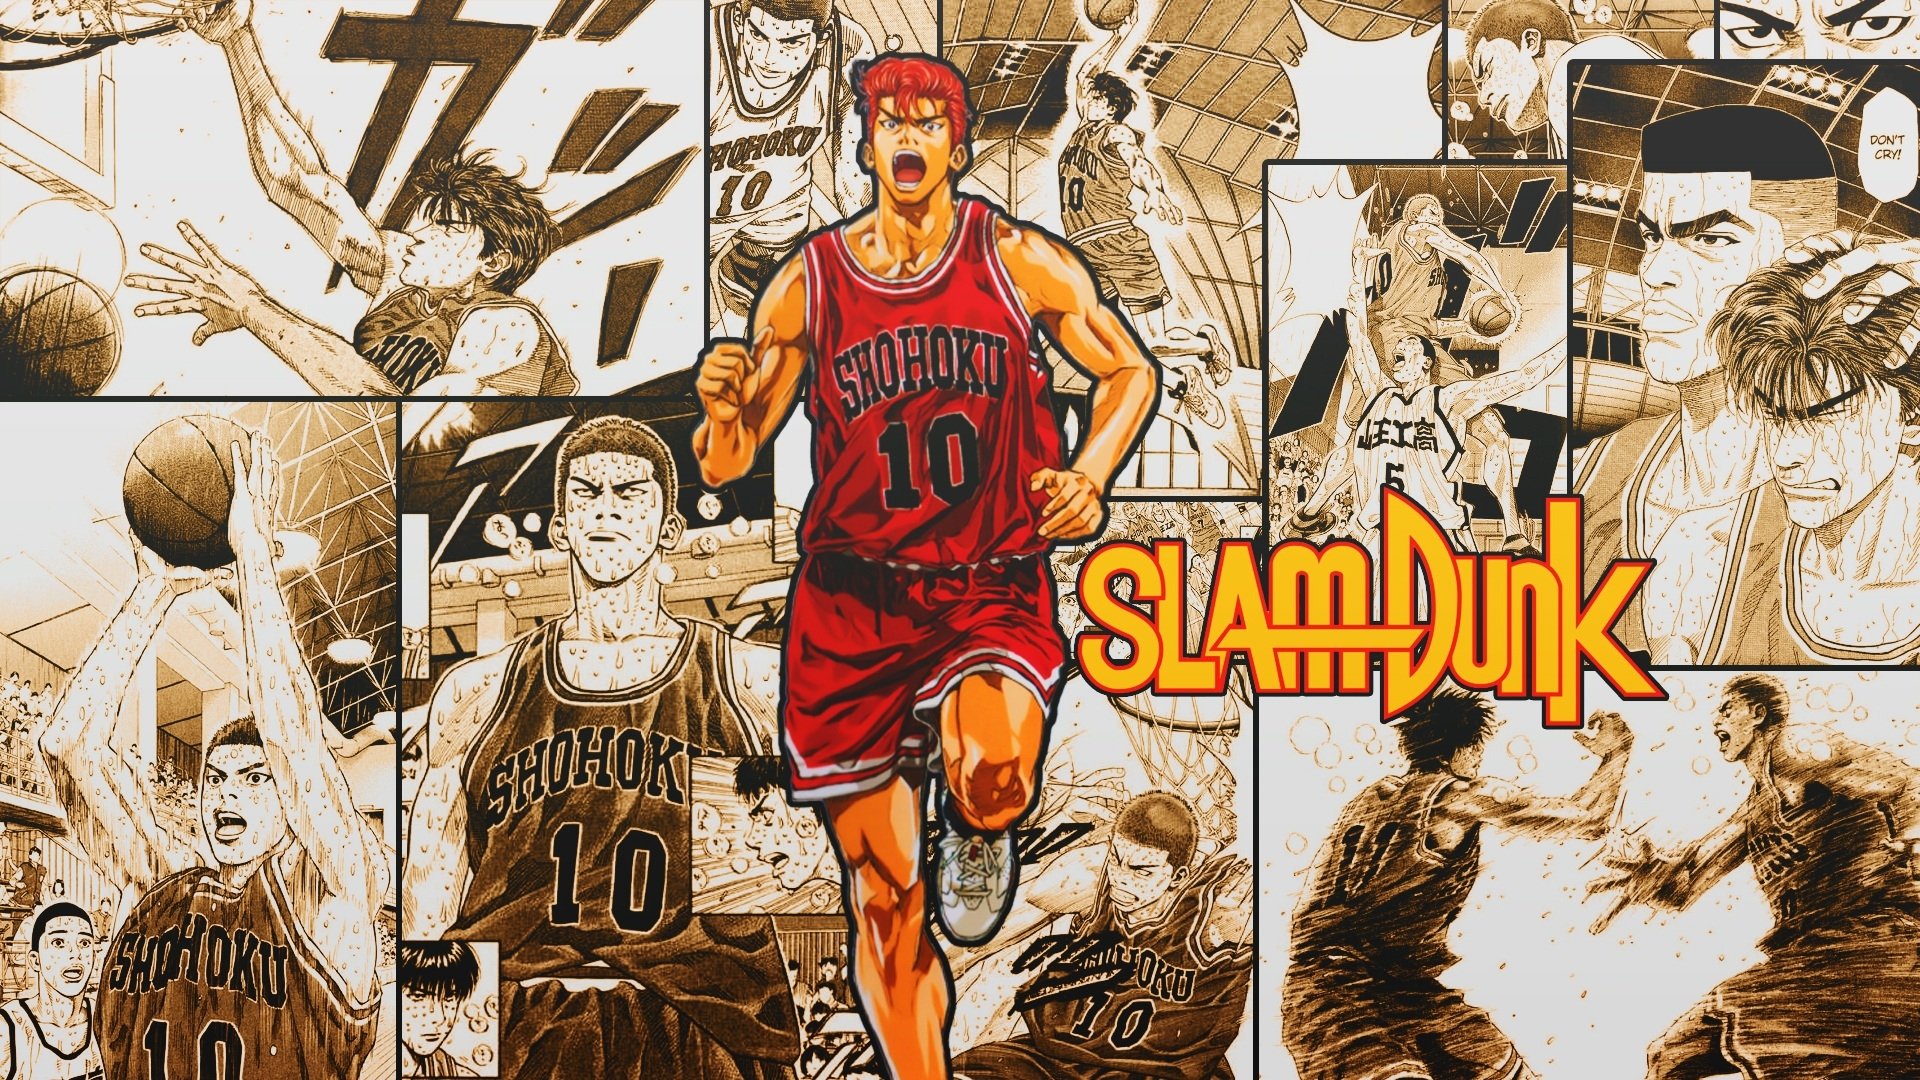 slam dunk wallpaper hd,basketball player,basketball,basketball moves,streetball,slam dunk